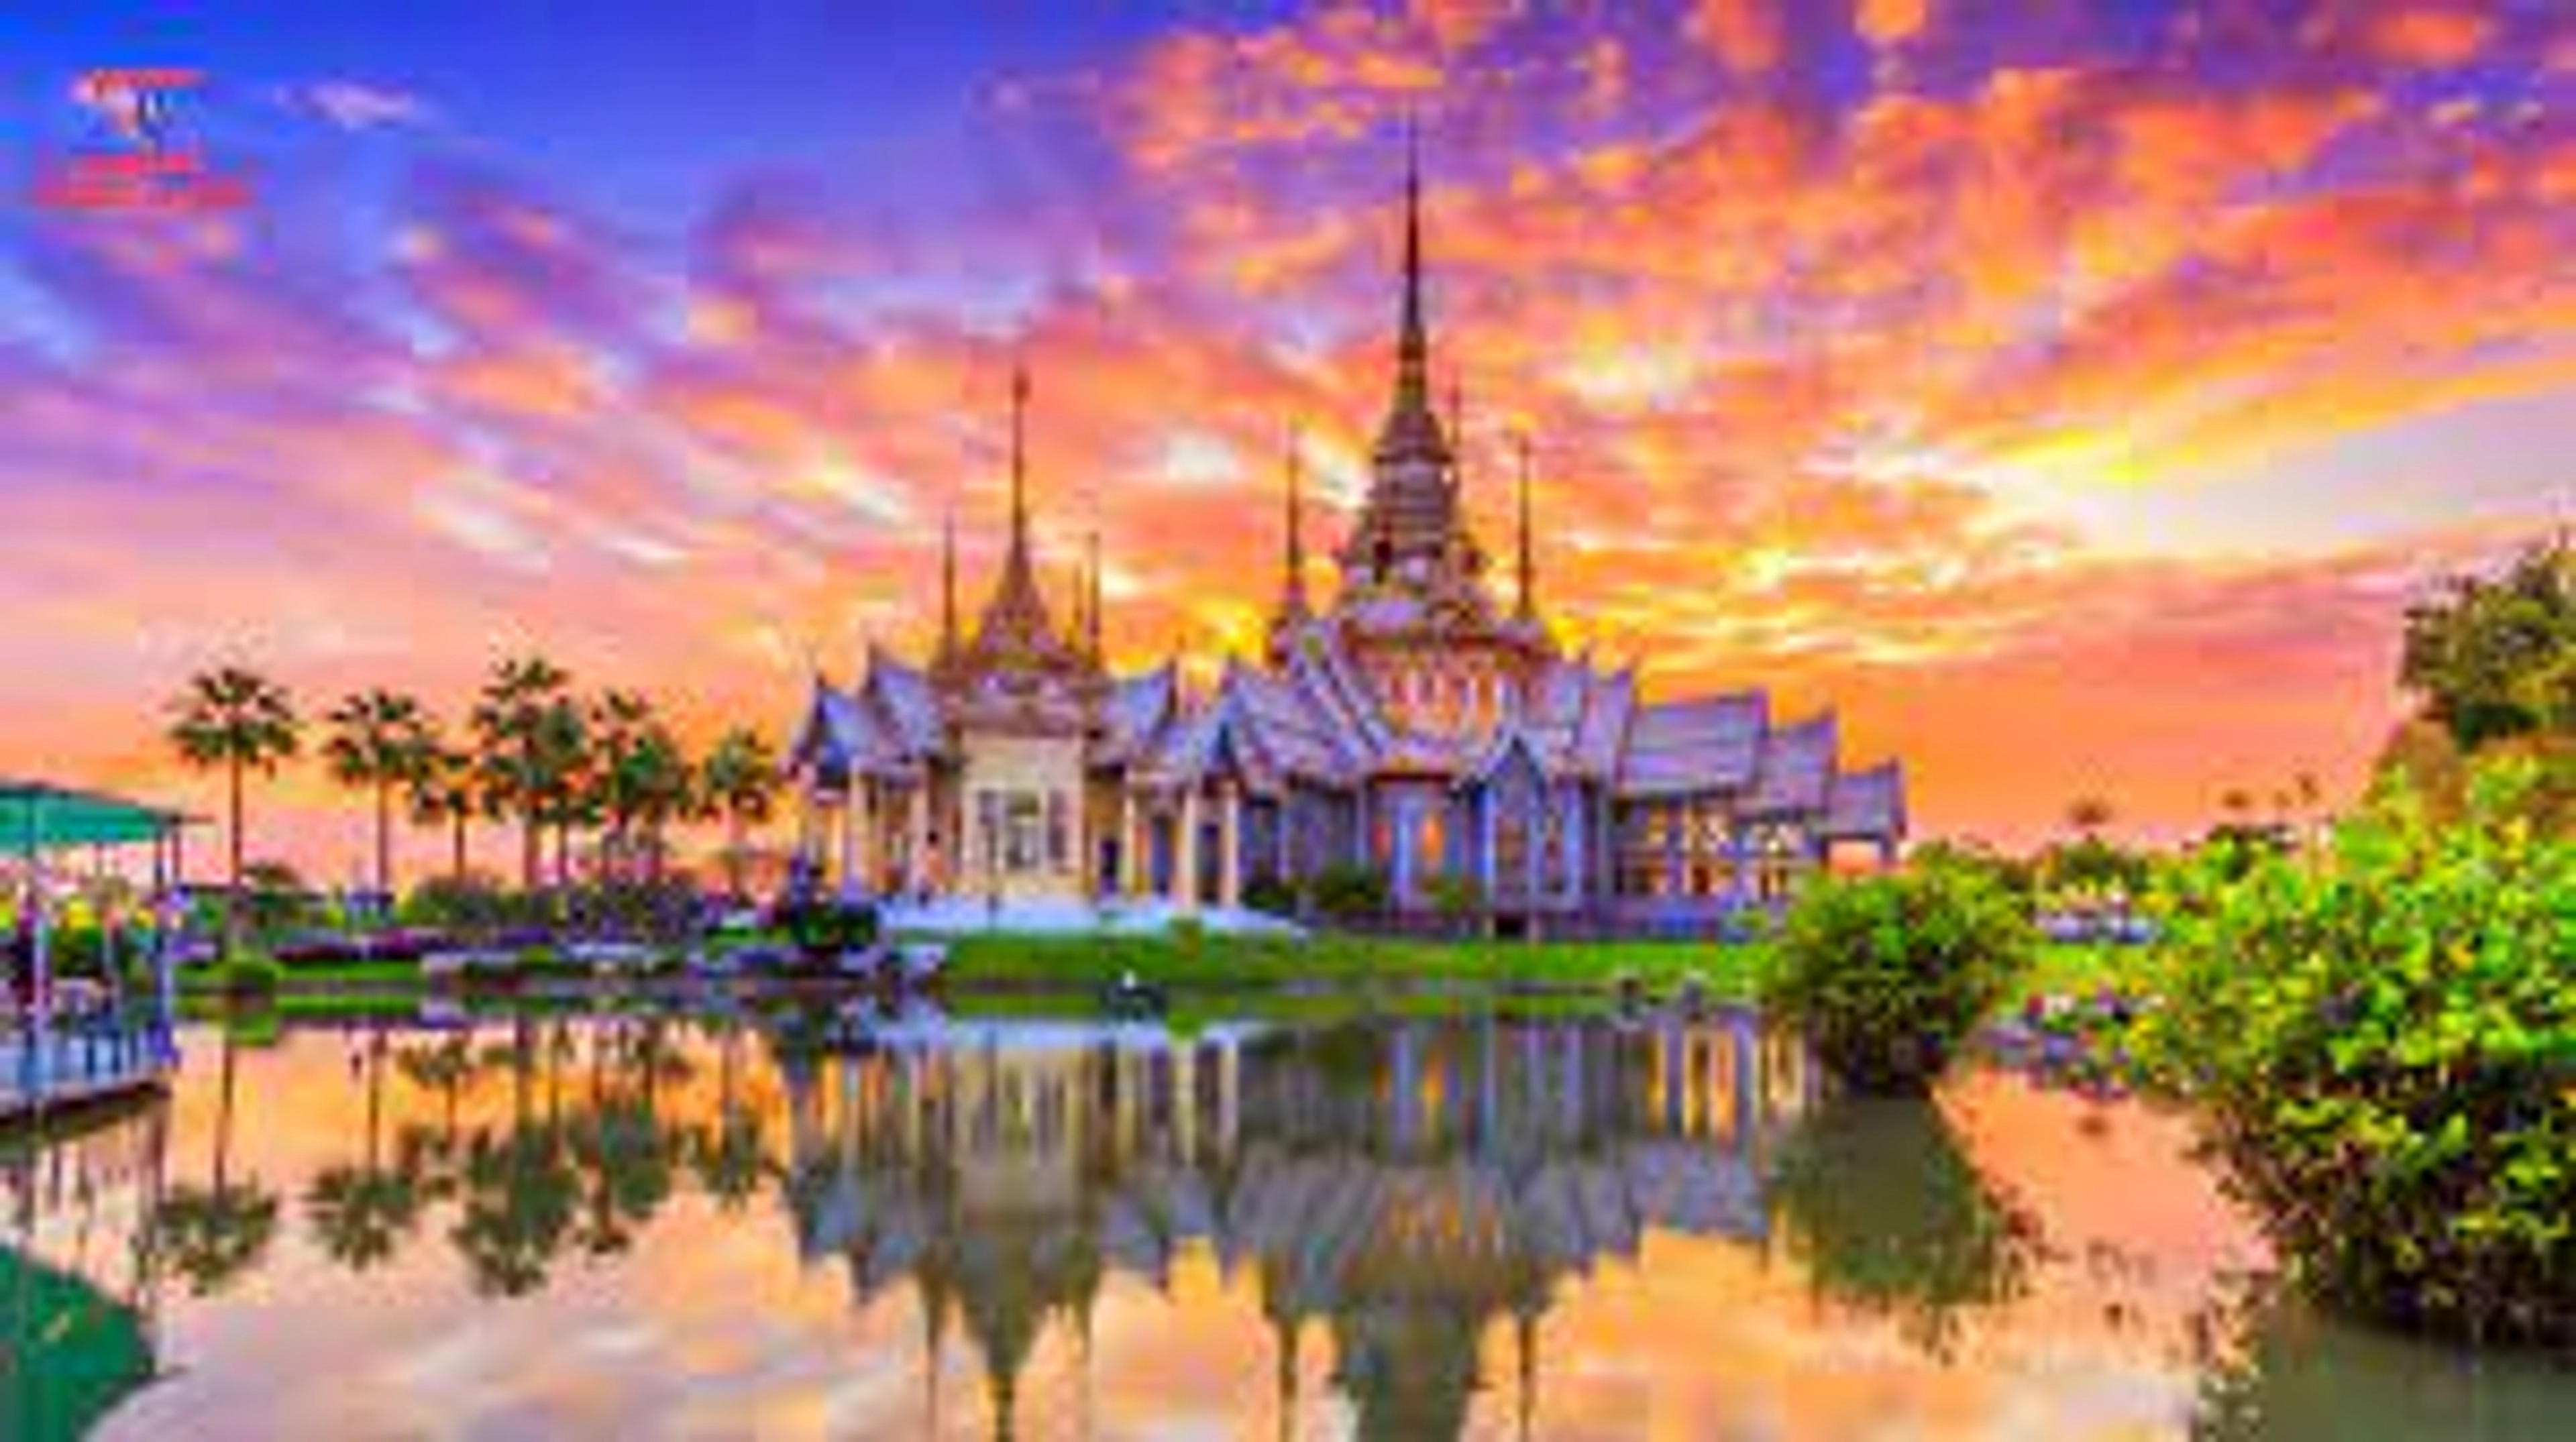 Khám phá ngôi chùa tuyệt đẹp ở Thái Lan được rất nhiều người yêu thích